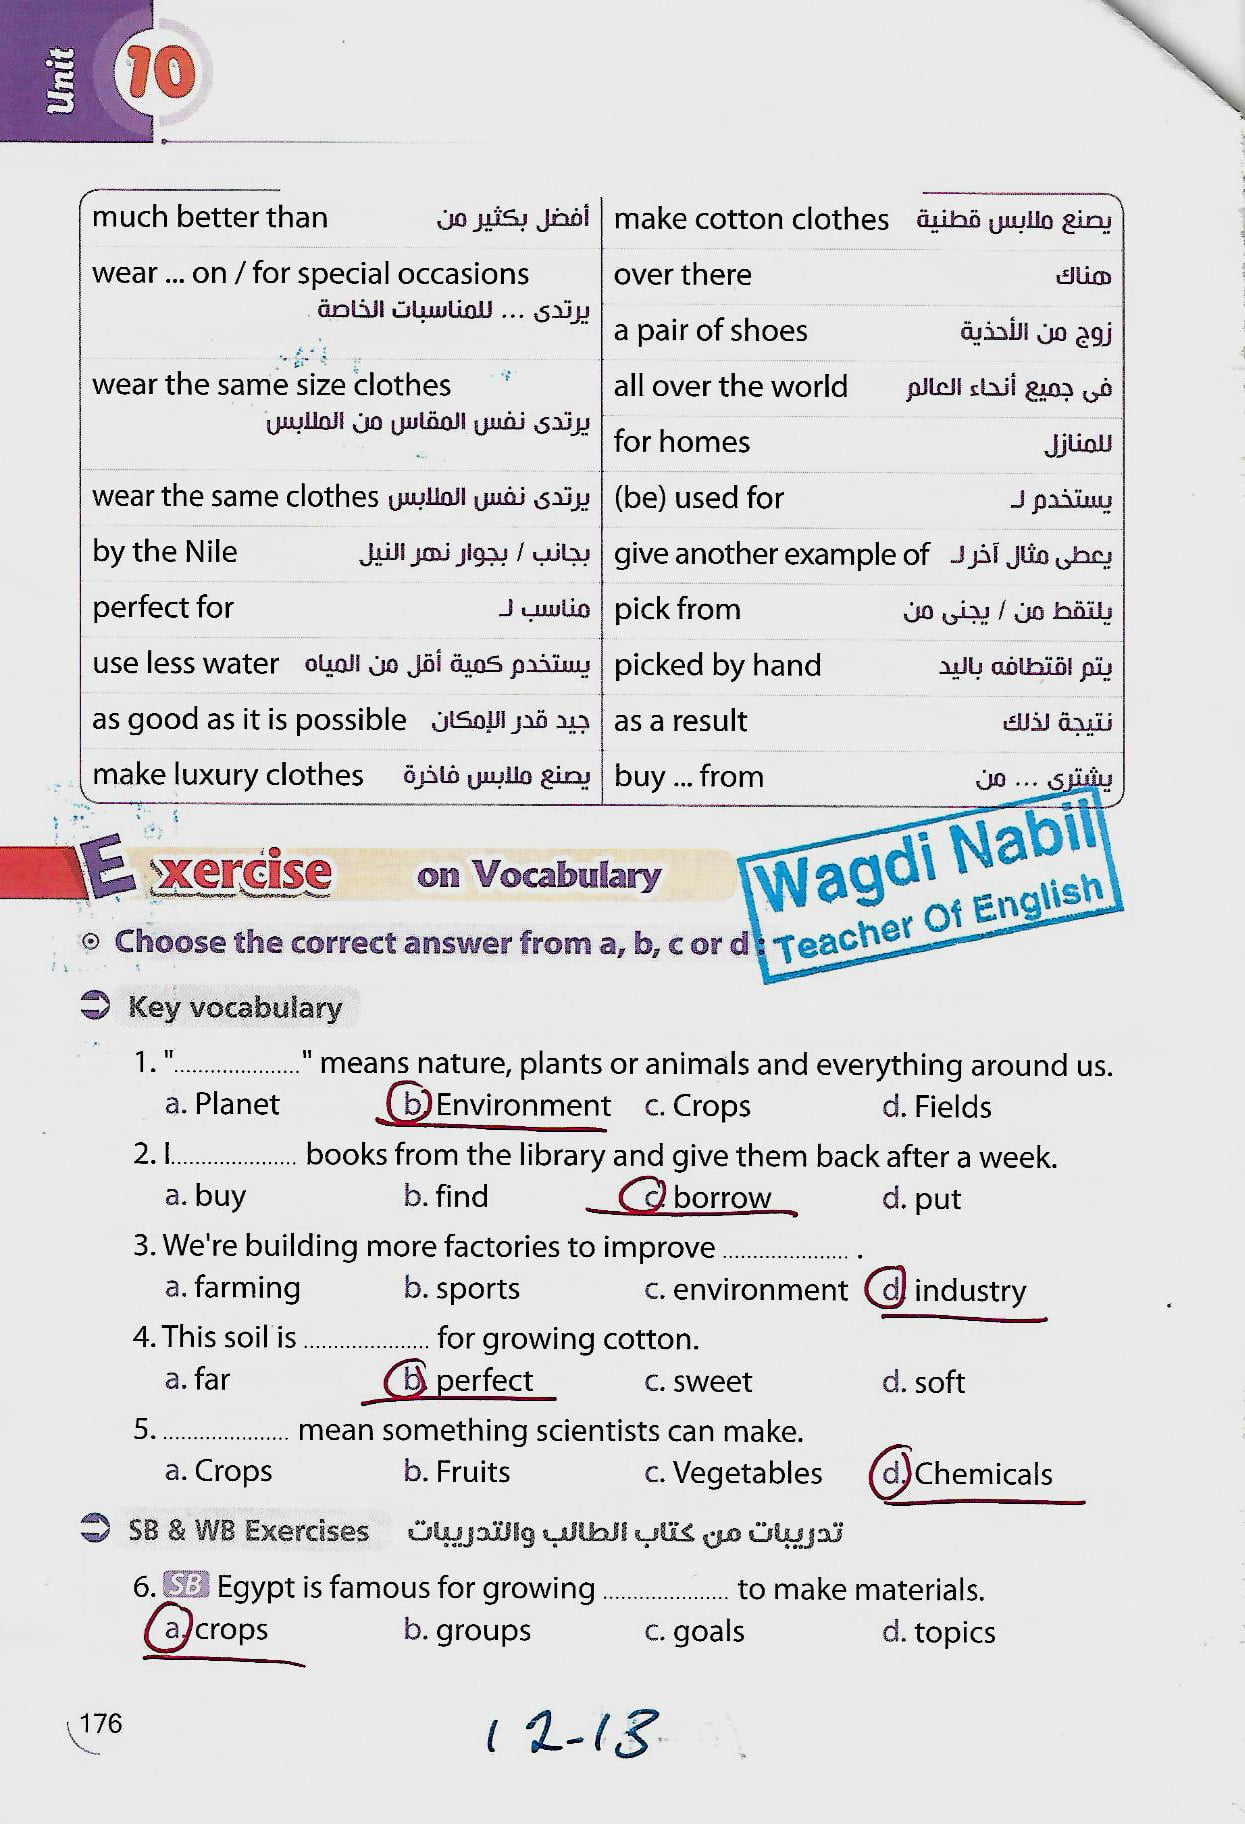 مراجعة اللغة الانجليزية للصف الثاني الاعدادي الترم الثاني mr _ Wagdi Nabil 3